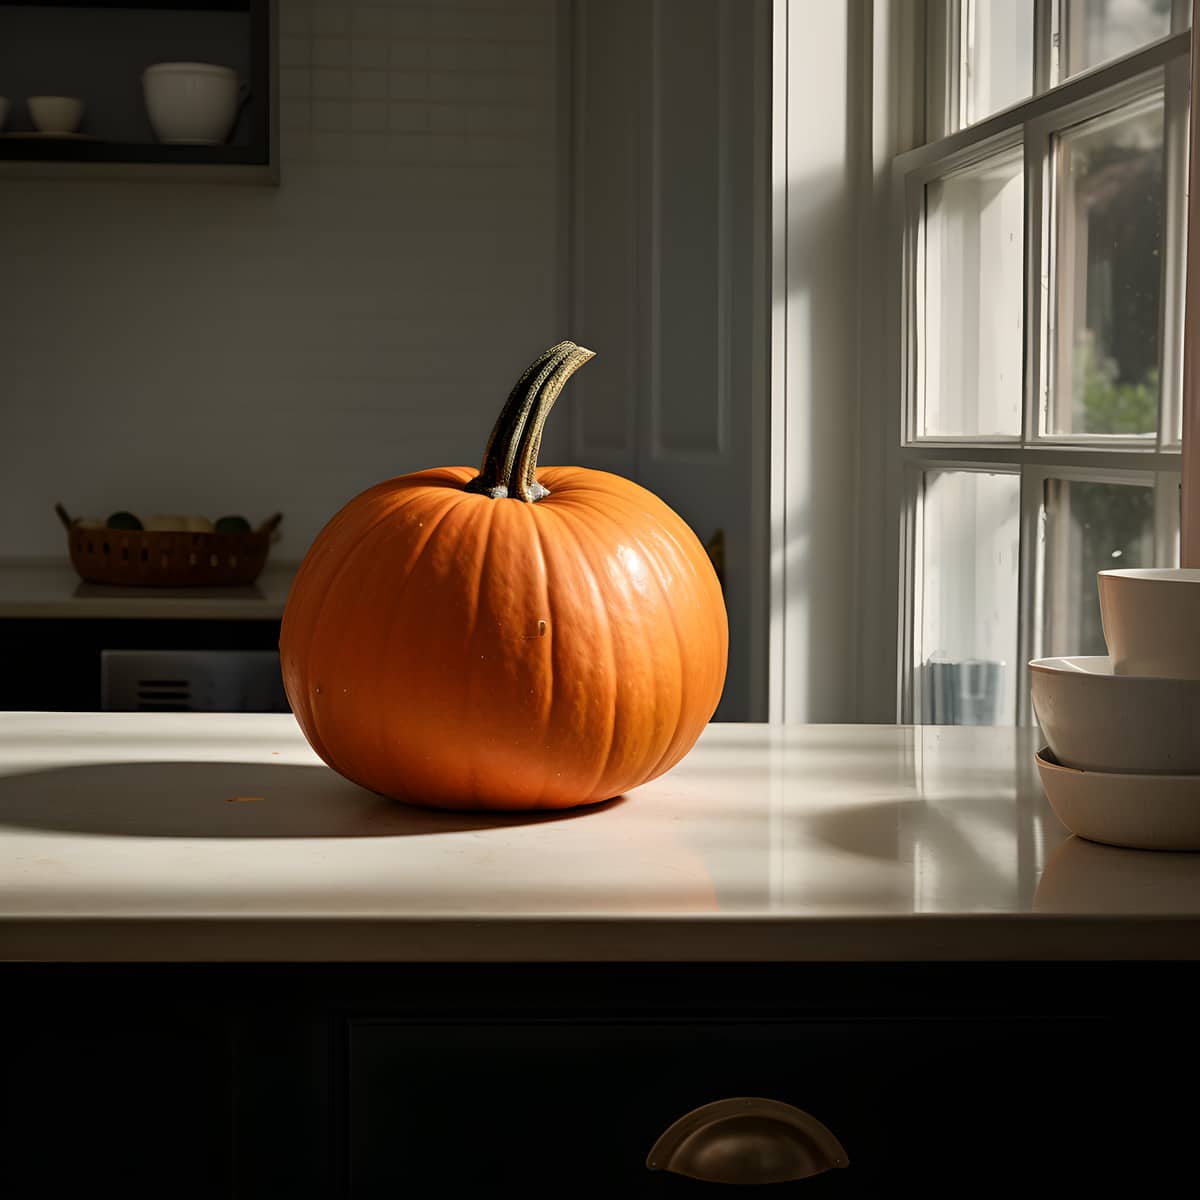 Dickinson Pumpkin on a kitchen counter